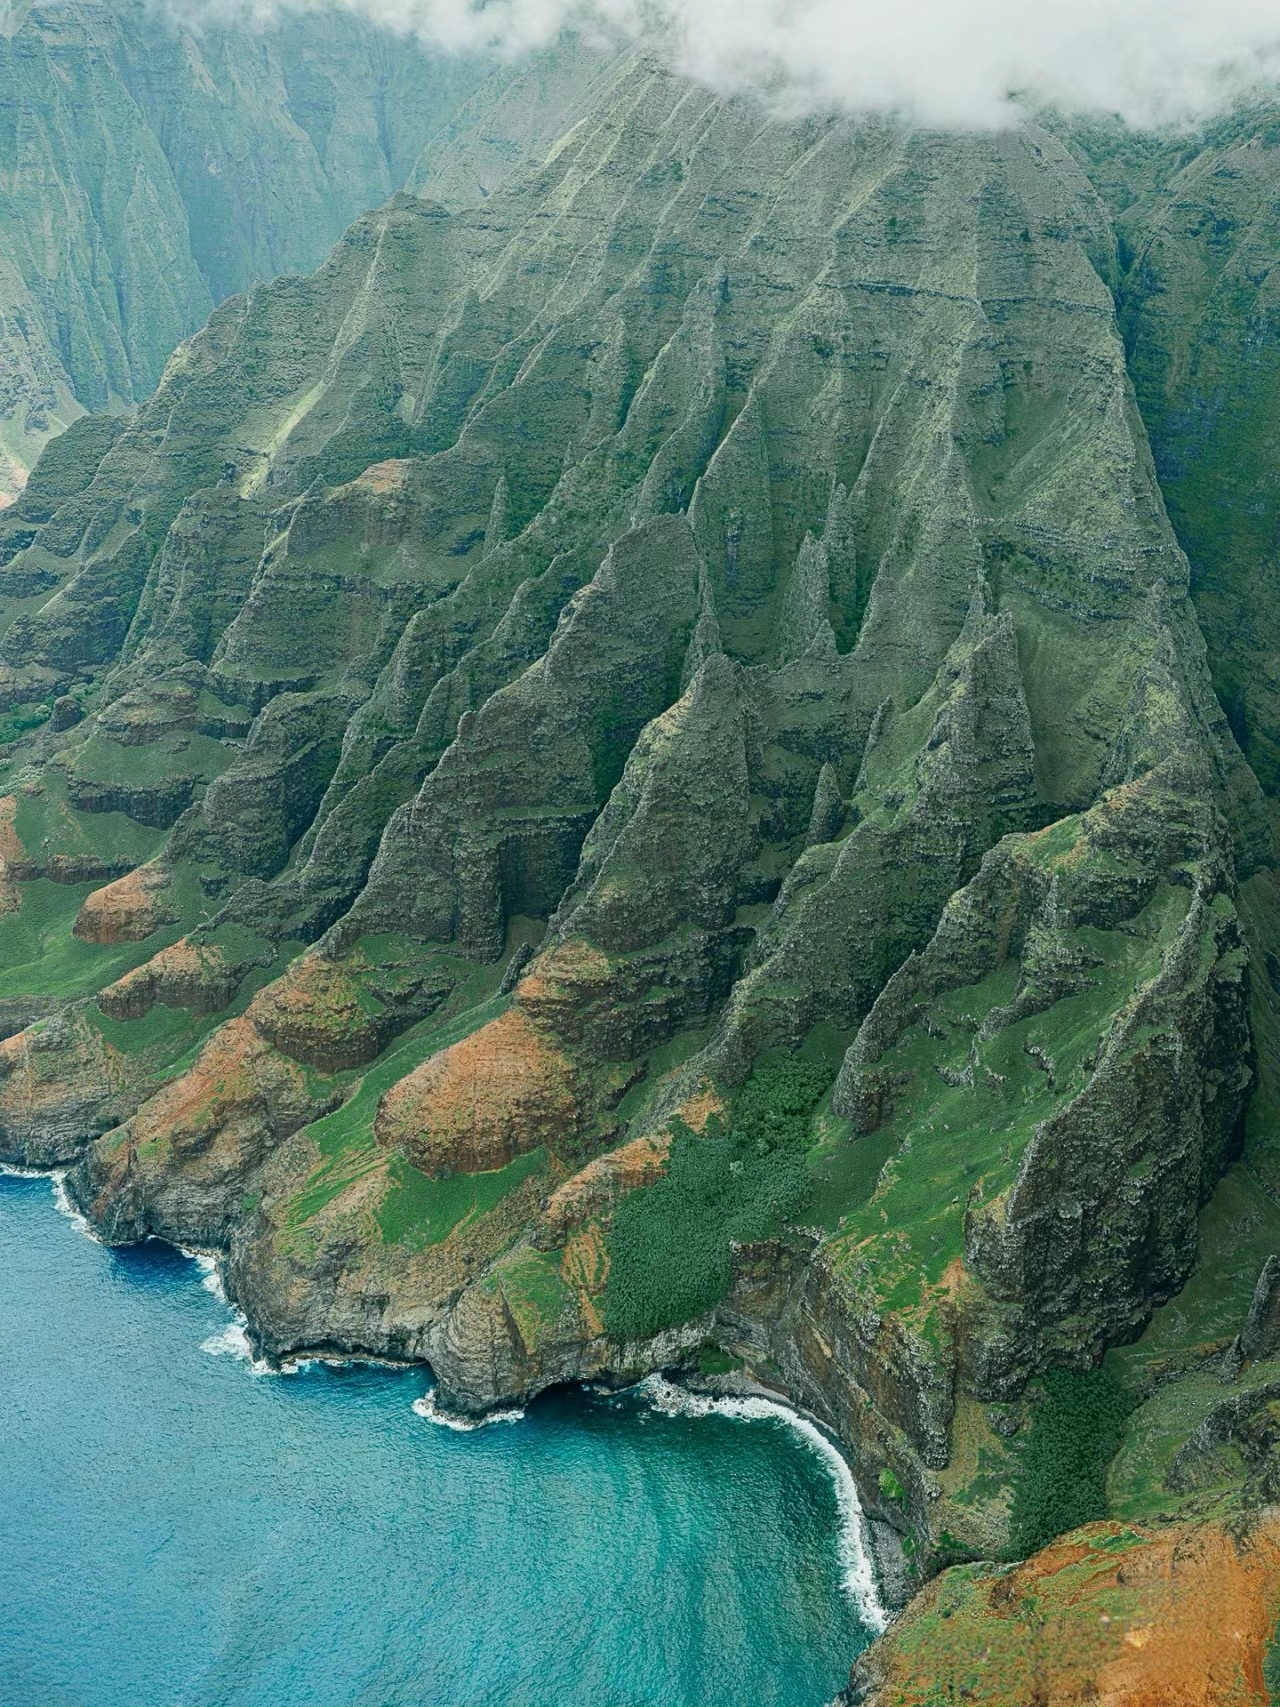 夏威夷可爱岛→转身看到了宇宙🌎的尽头